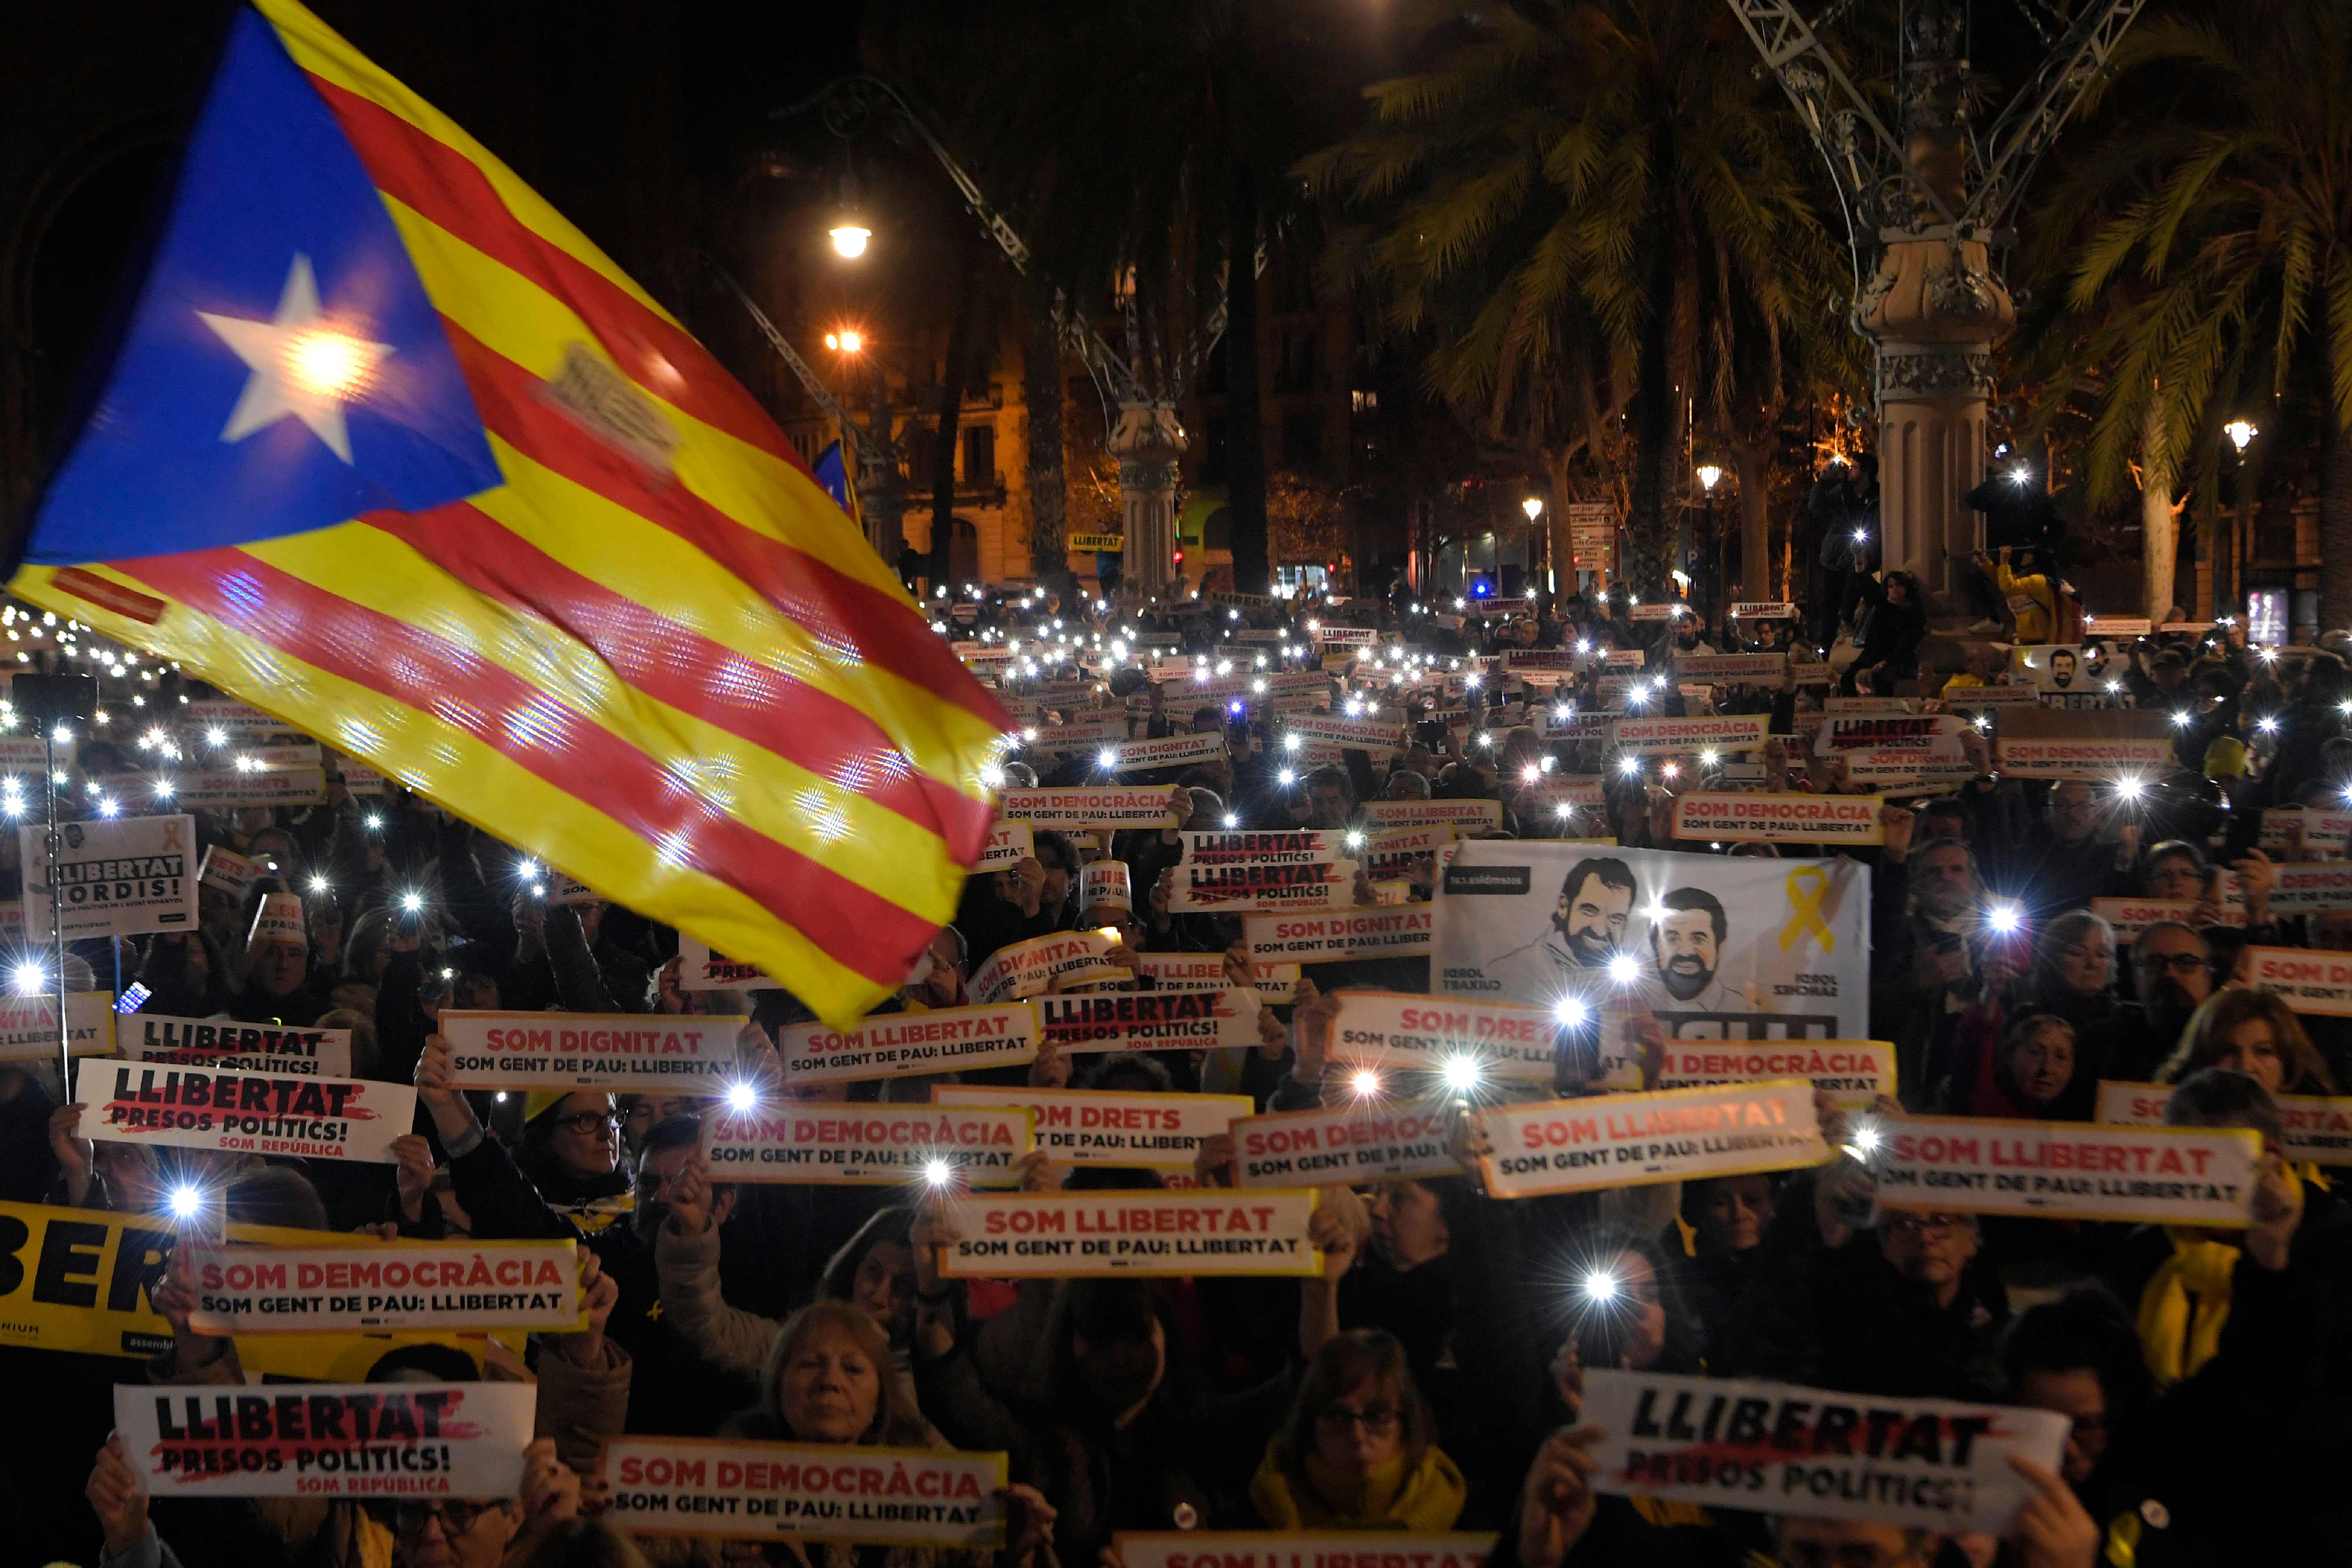 تظاهرات فى كتالونيا تطالب بالإفراج عن مسئولى الإقليم